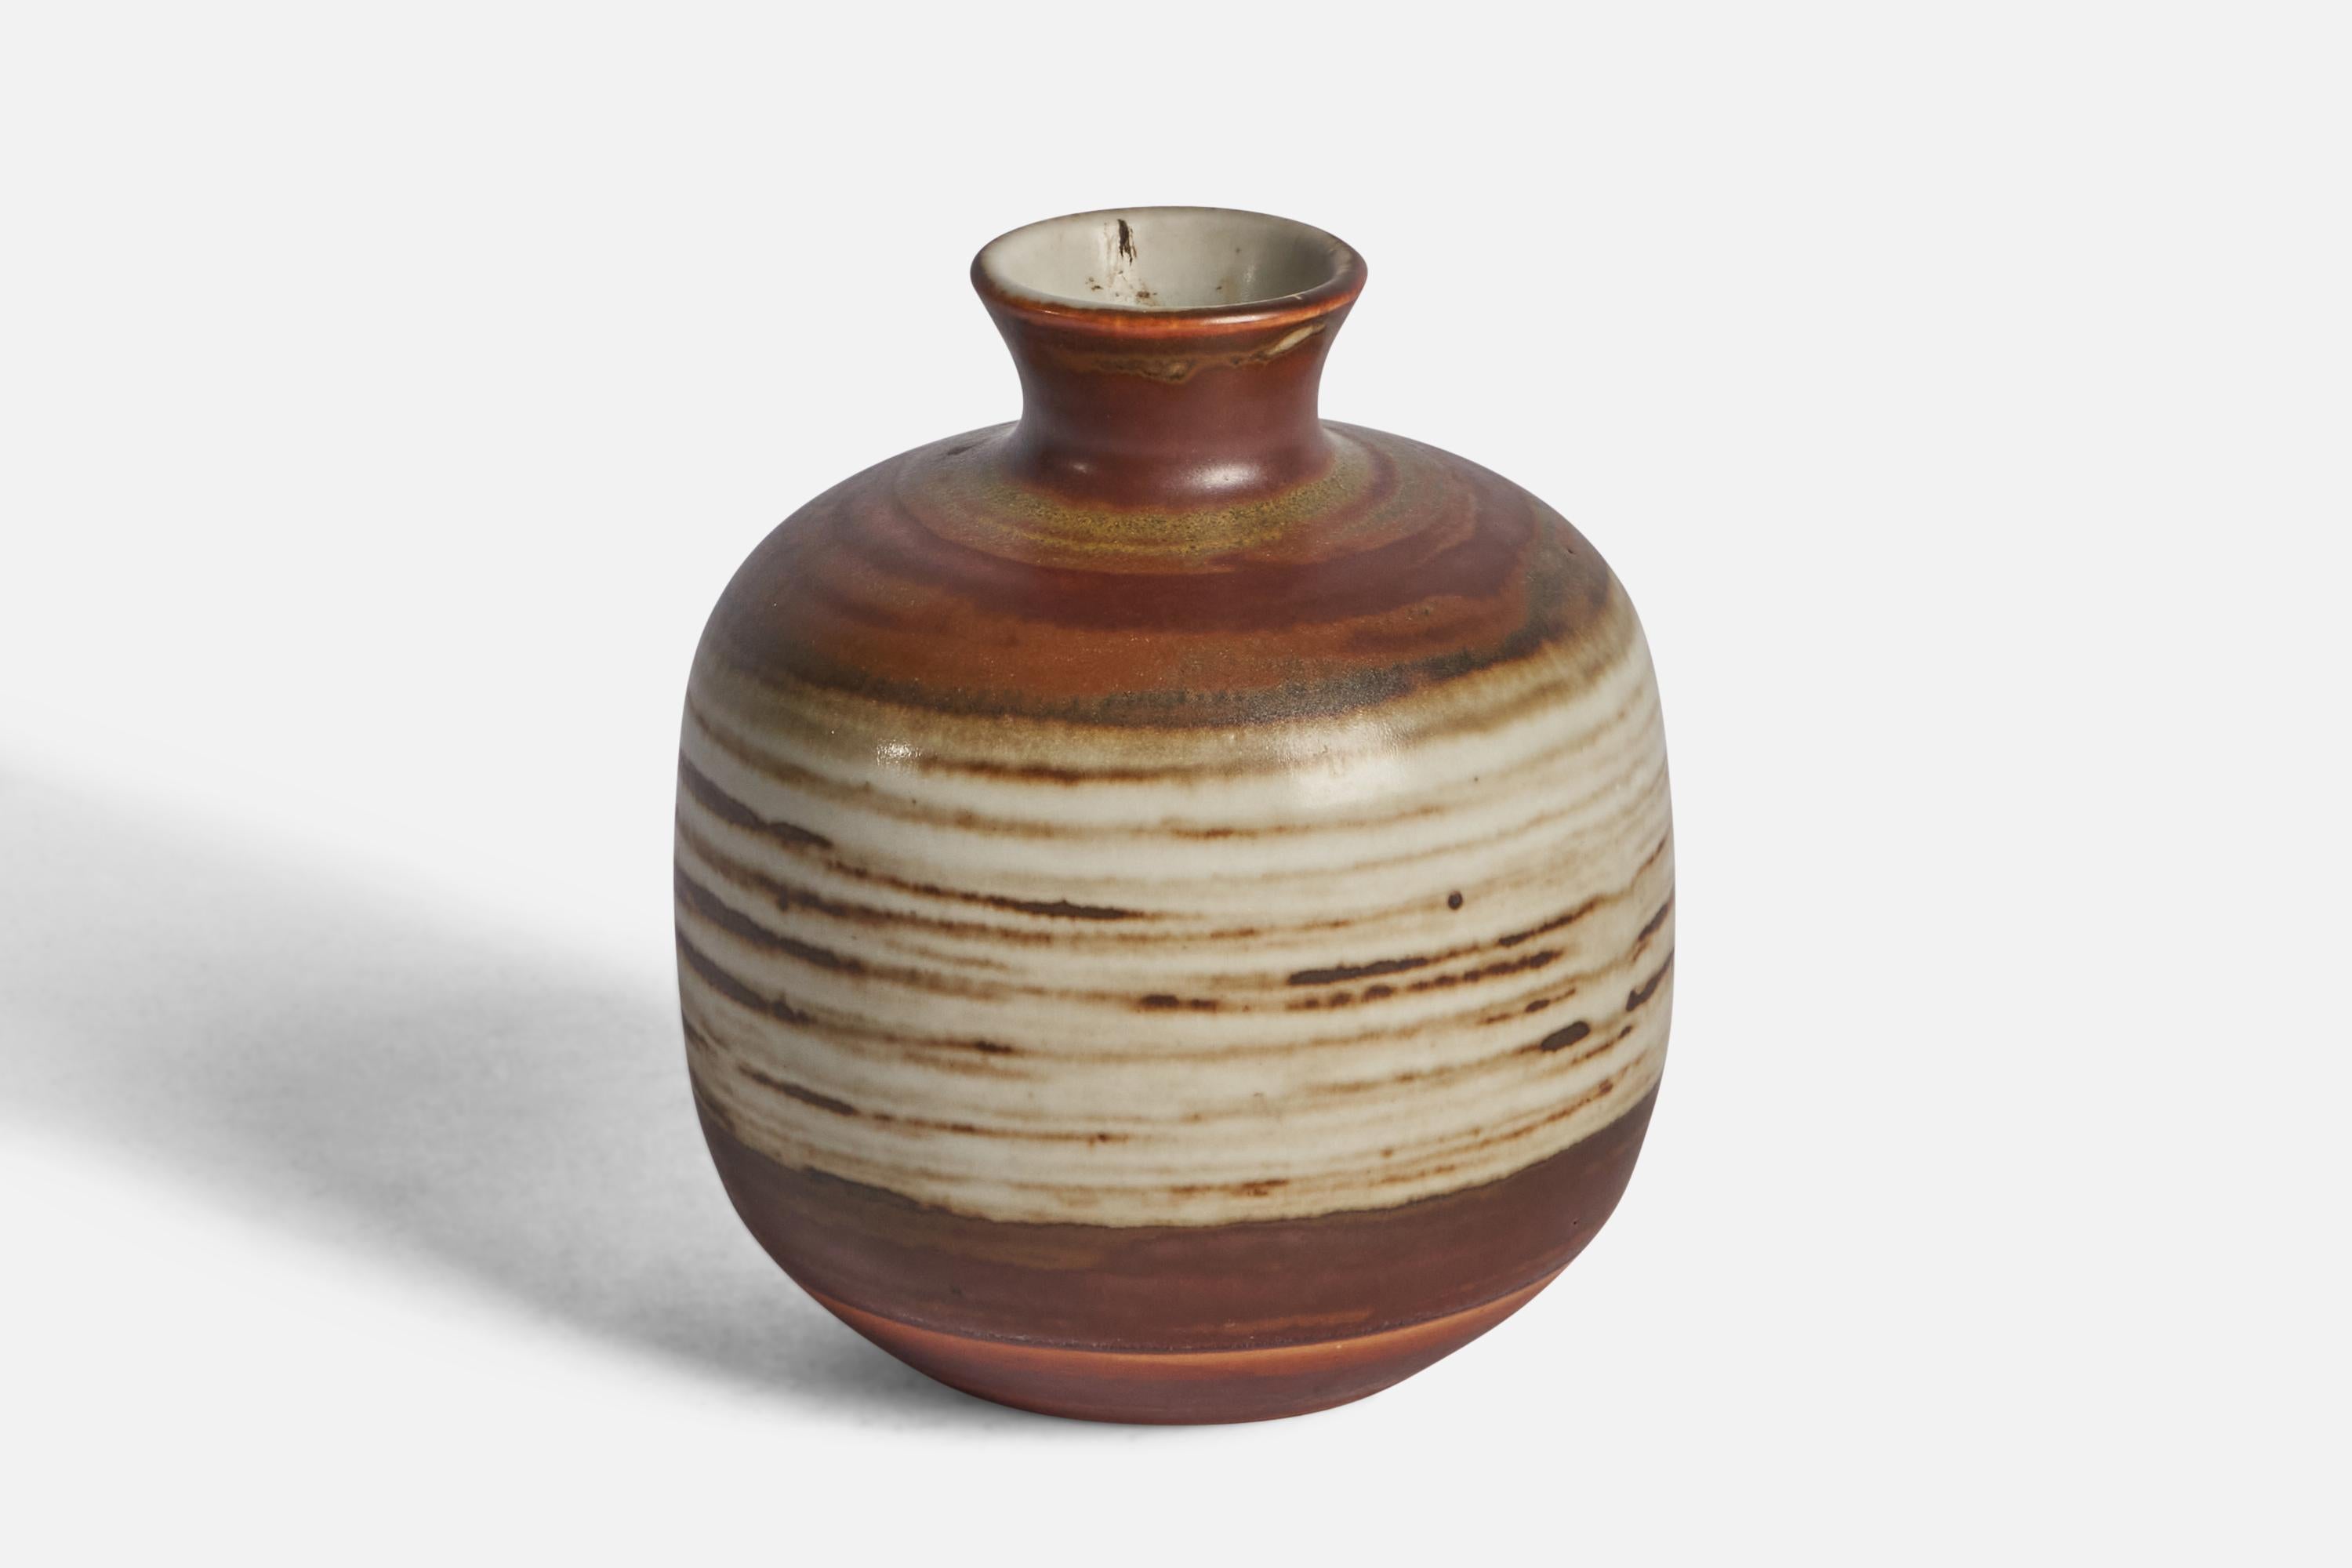 Vase en grès rouge, beige et blanc cassé, conçu et produit en Suède, vers les années 1960.

